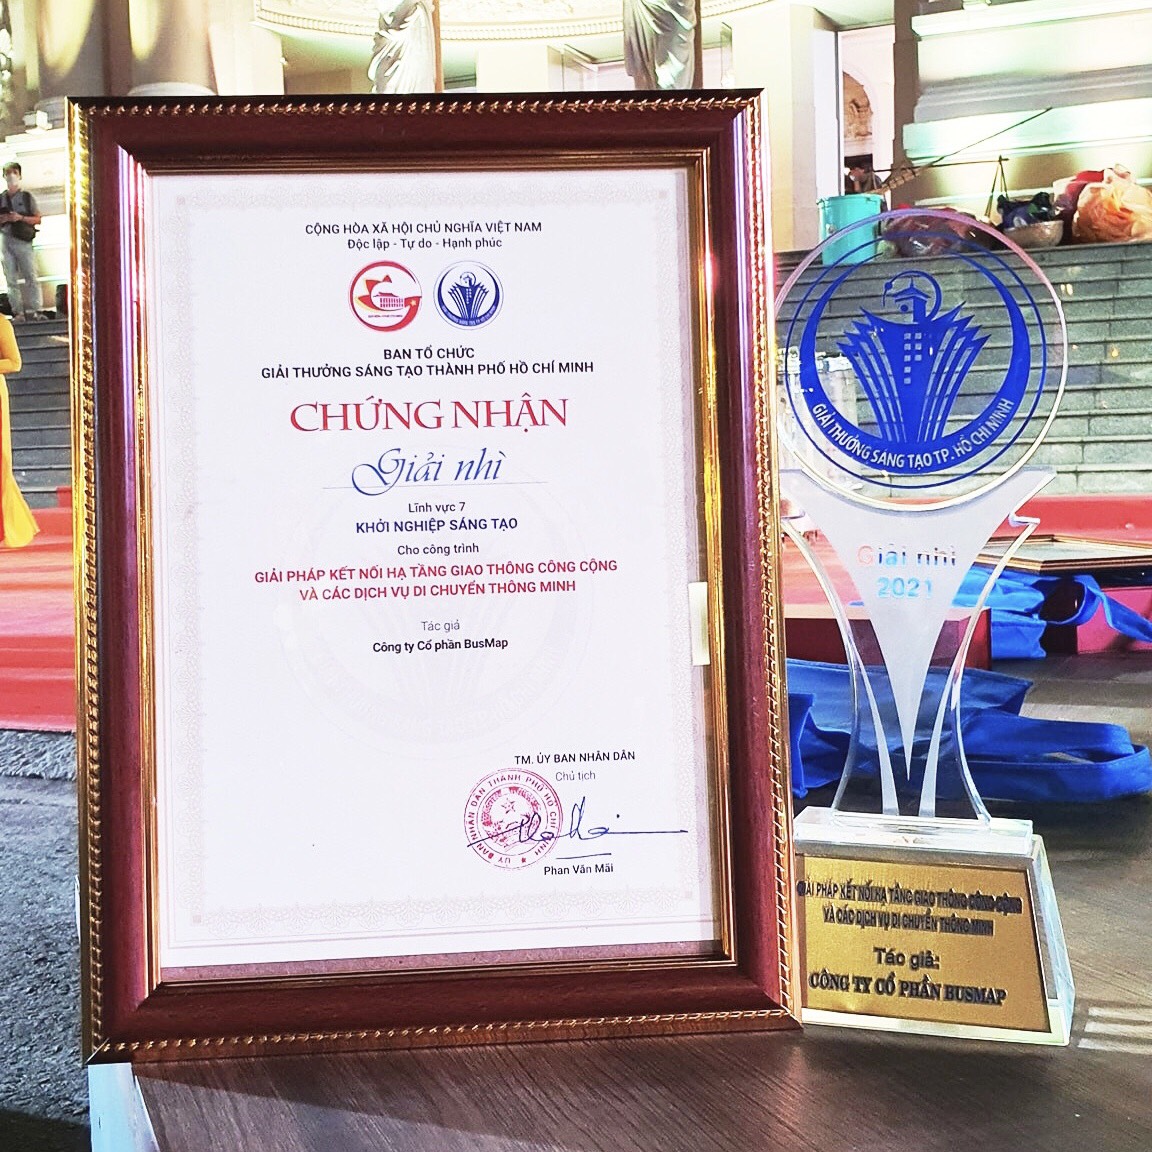 BusMap được vinh danh tại Giải thưởng Sáng tạo thành phố Hồ Chí Minh